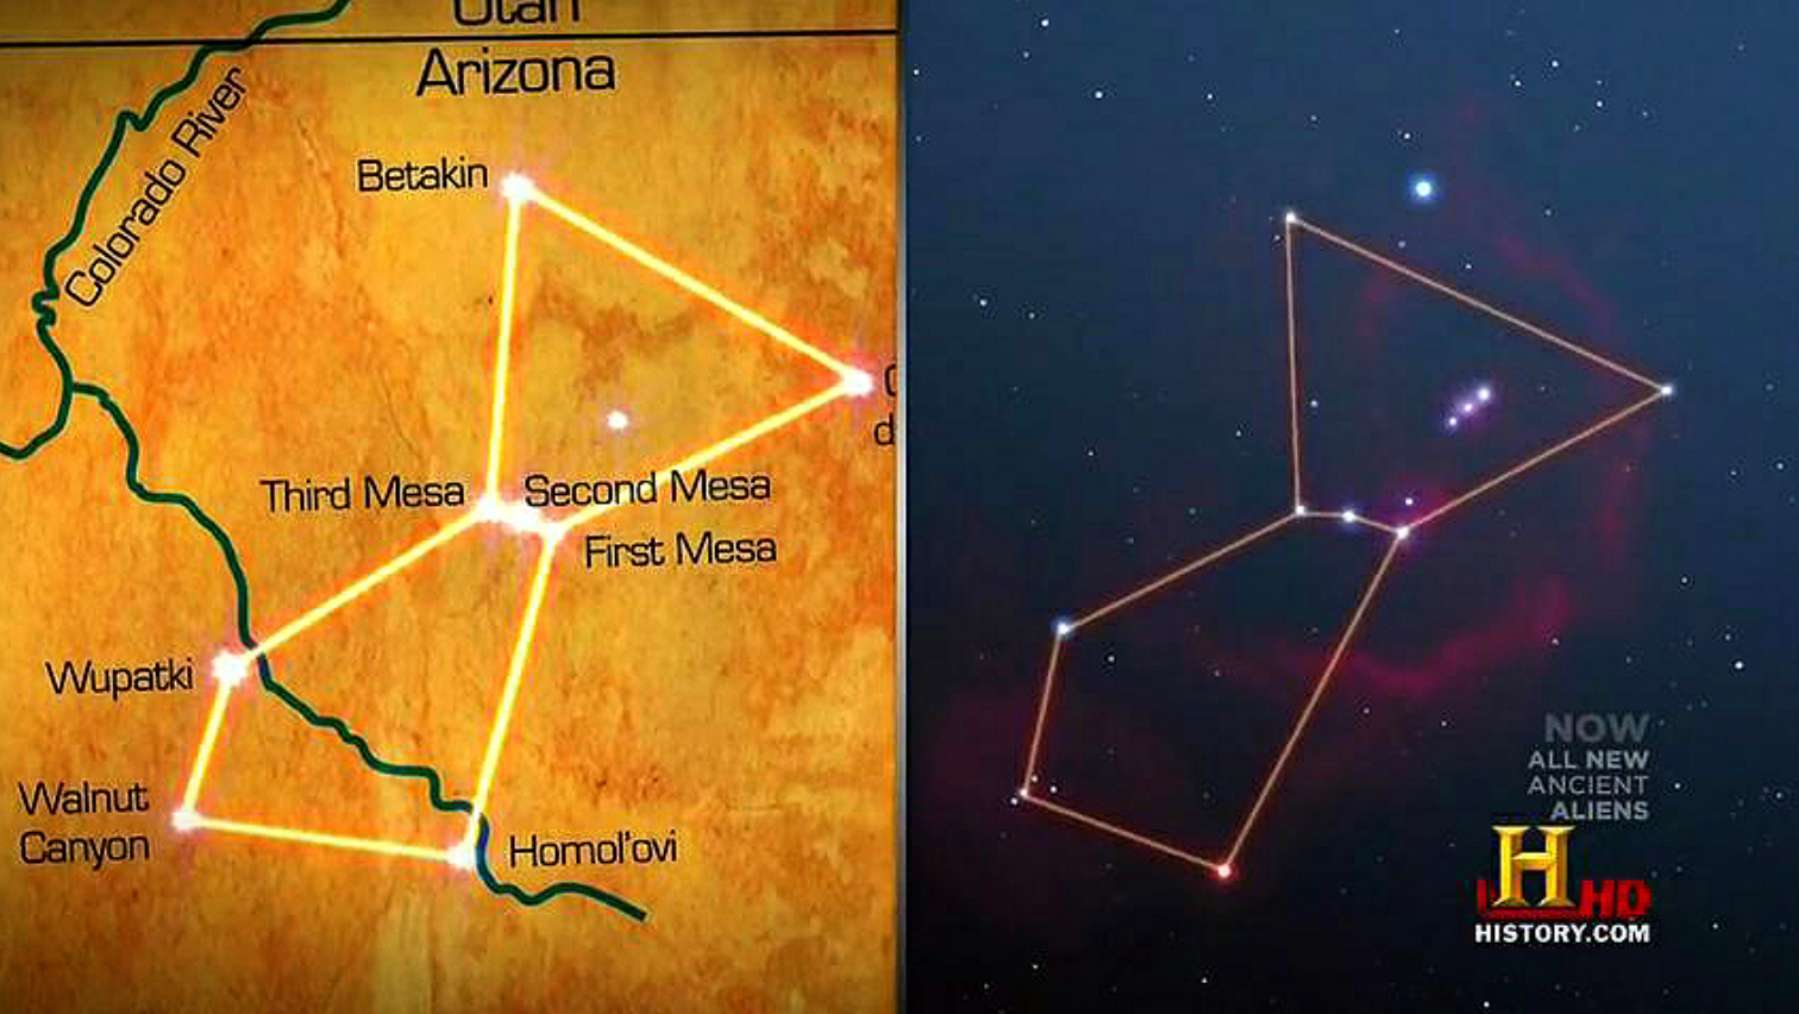 Déi dräi Hopi Mesas alignéieren "perfekt" mam Stärebild Orion